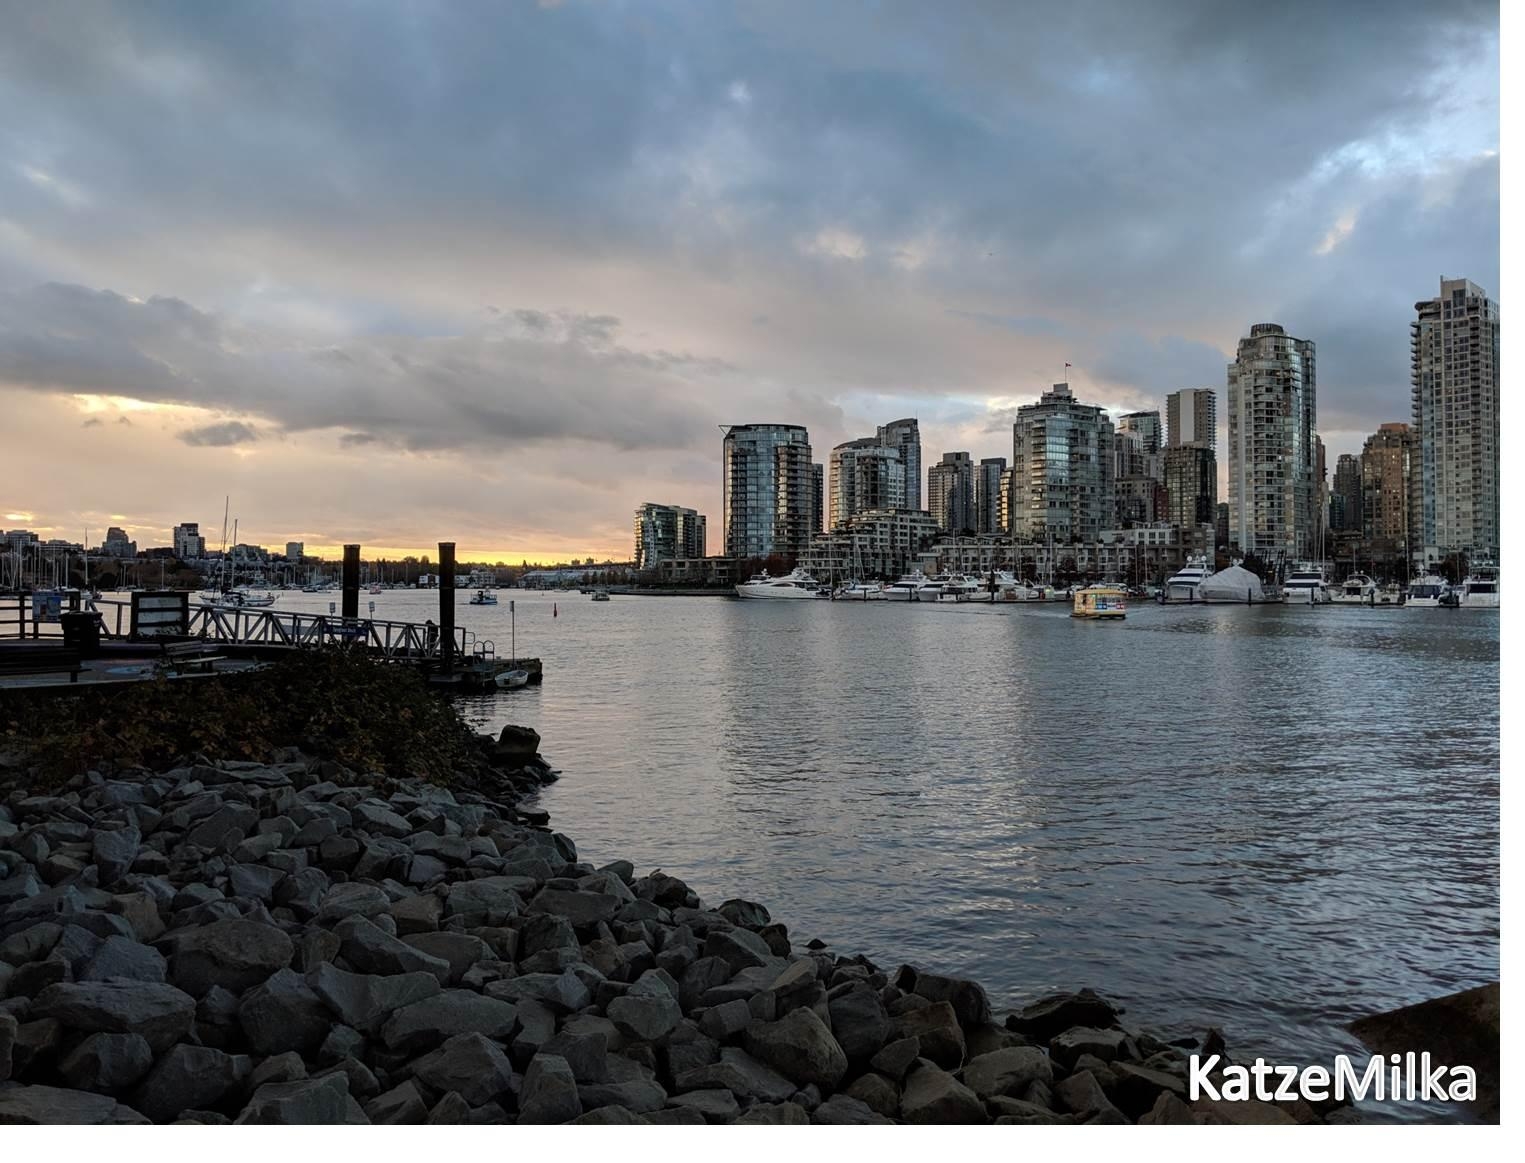 Letztes Jahr in Vancouver. Eine der schönsten Städte weltweit. 
#urlaub #Kanada #InternationaleKonferenz